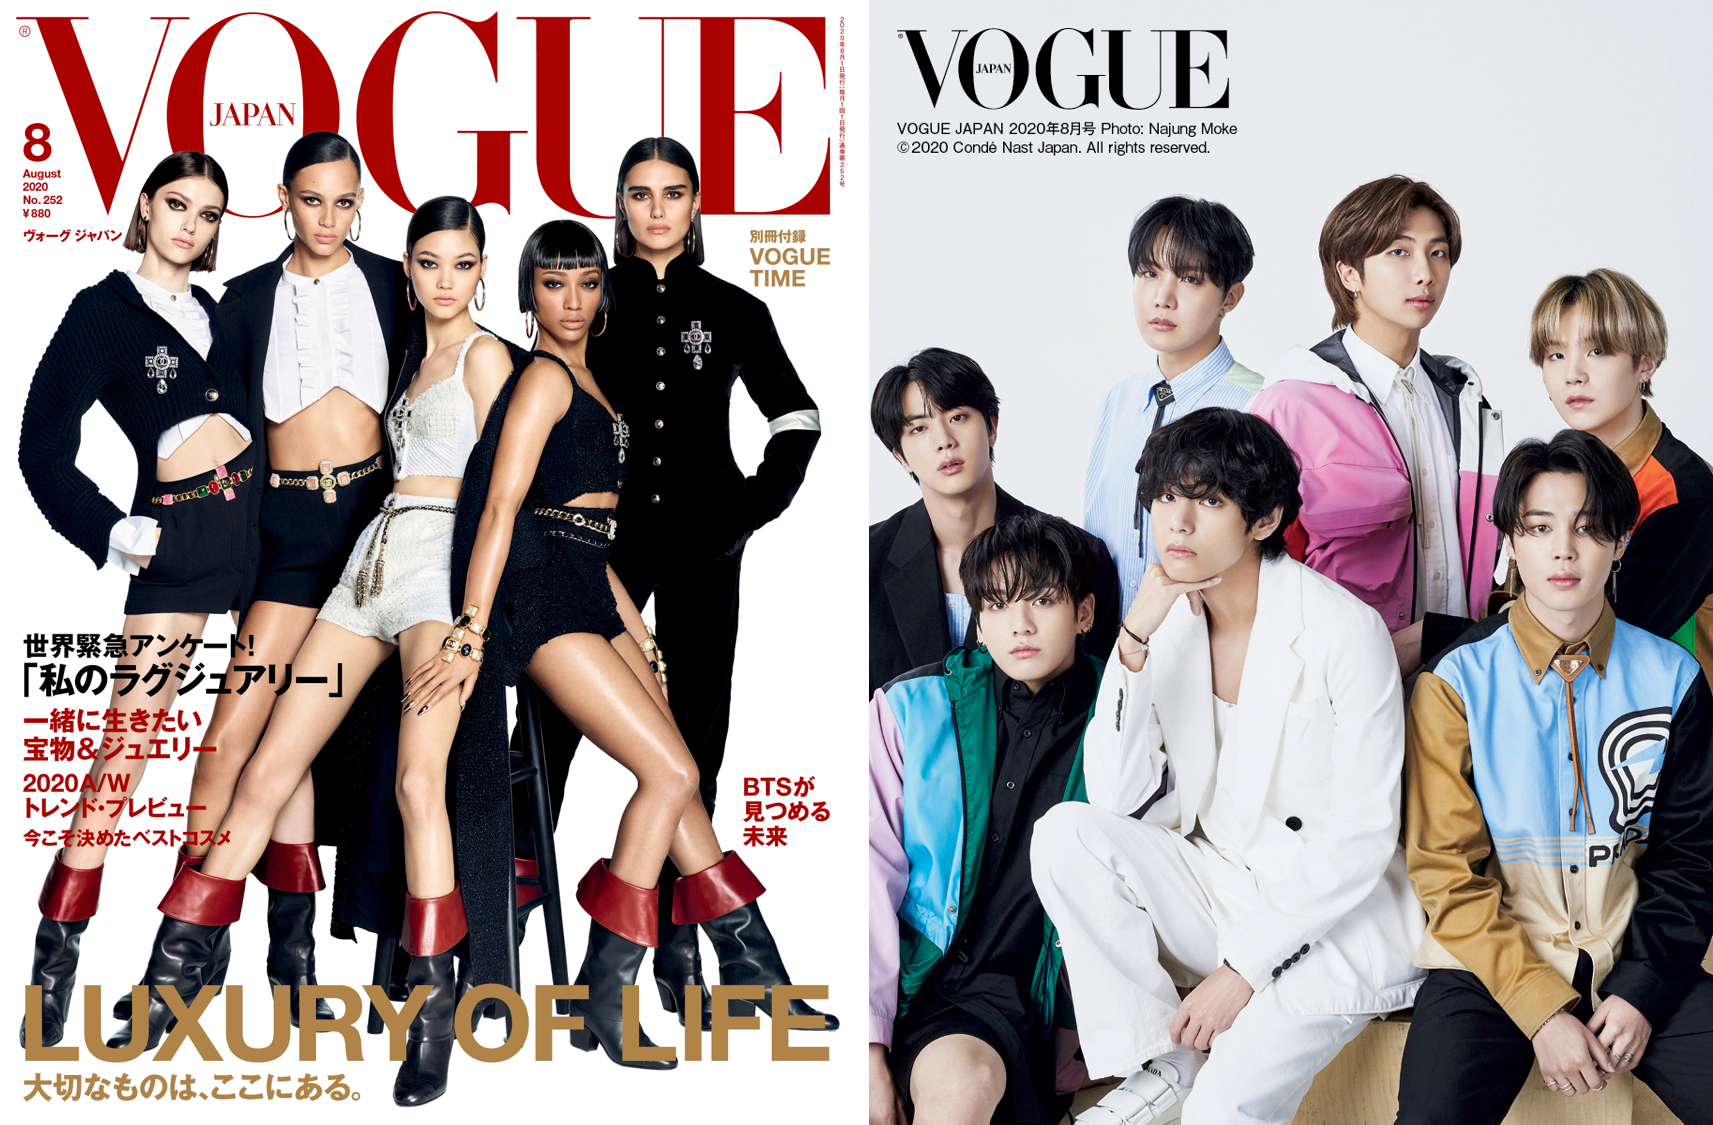 Btsが Vogue Japan に初登場 ファンへの想いや未来について 独占